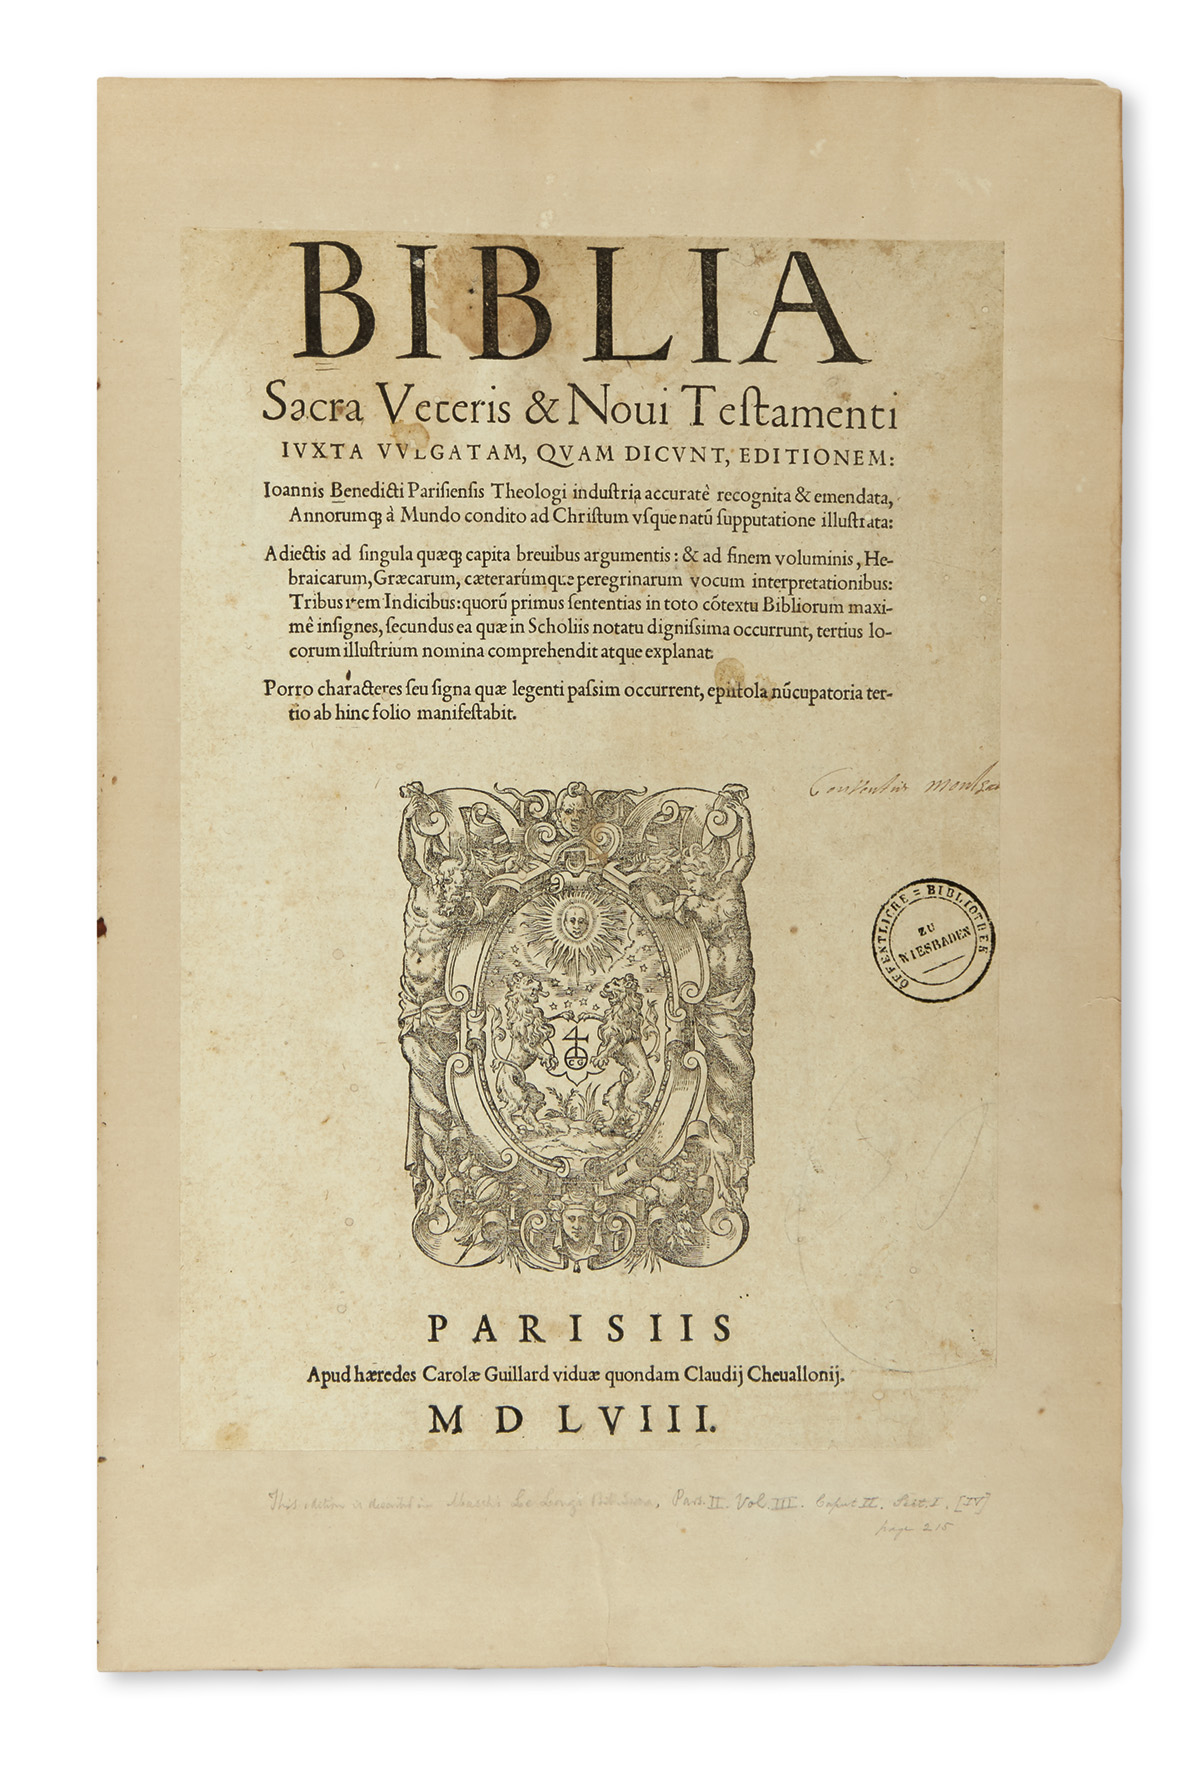 BIBLE IN LATIN.  Biblia sacra veteris & novi testamenti iuxta vulgatam.  1558